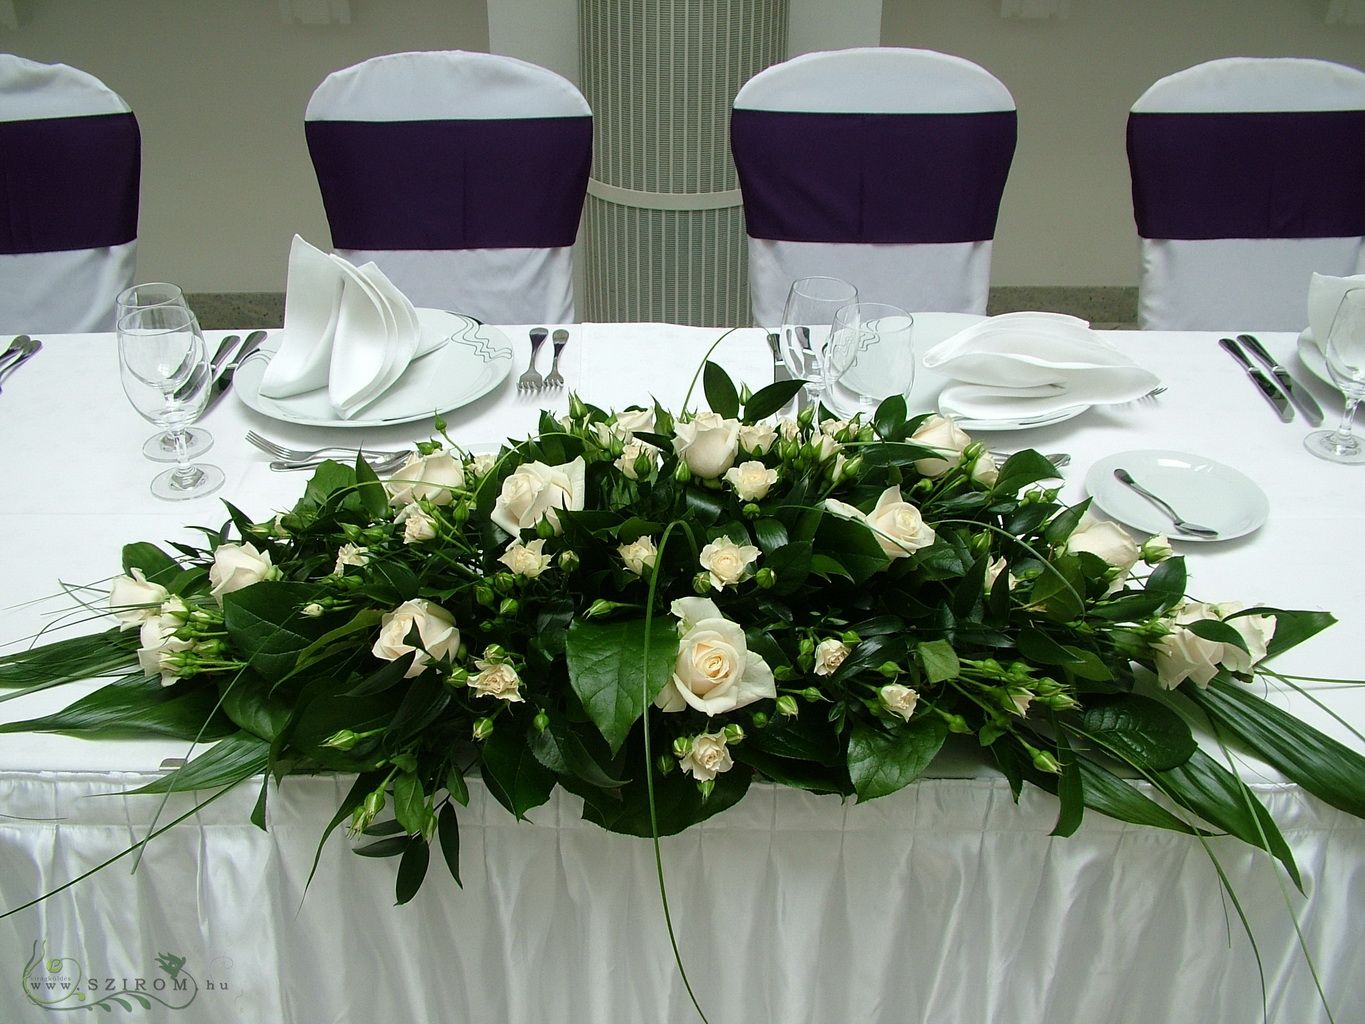 Főasztaldísz (krém rózsa, bokros rózsa ), Gerbeaud, esküvő